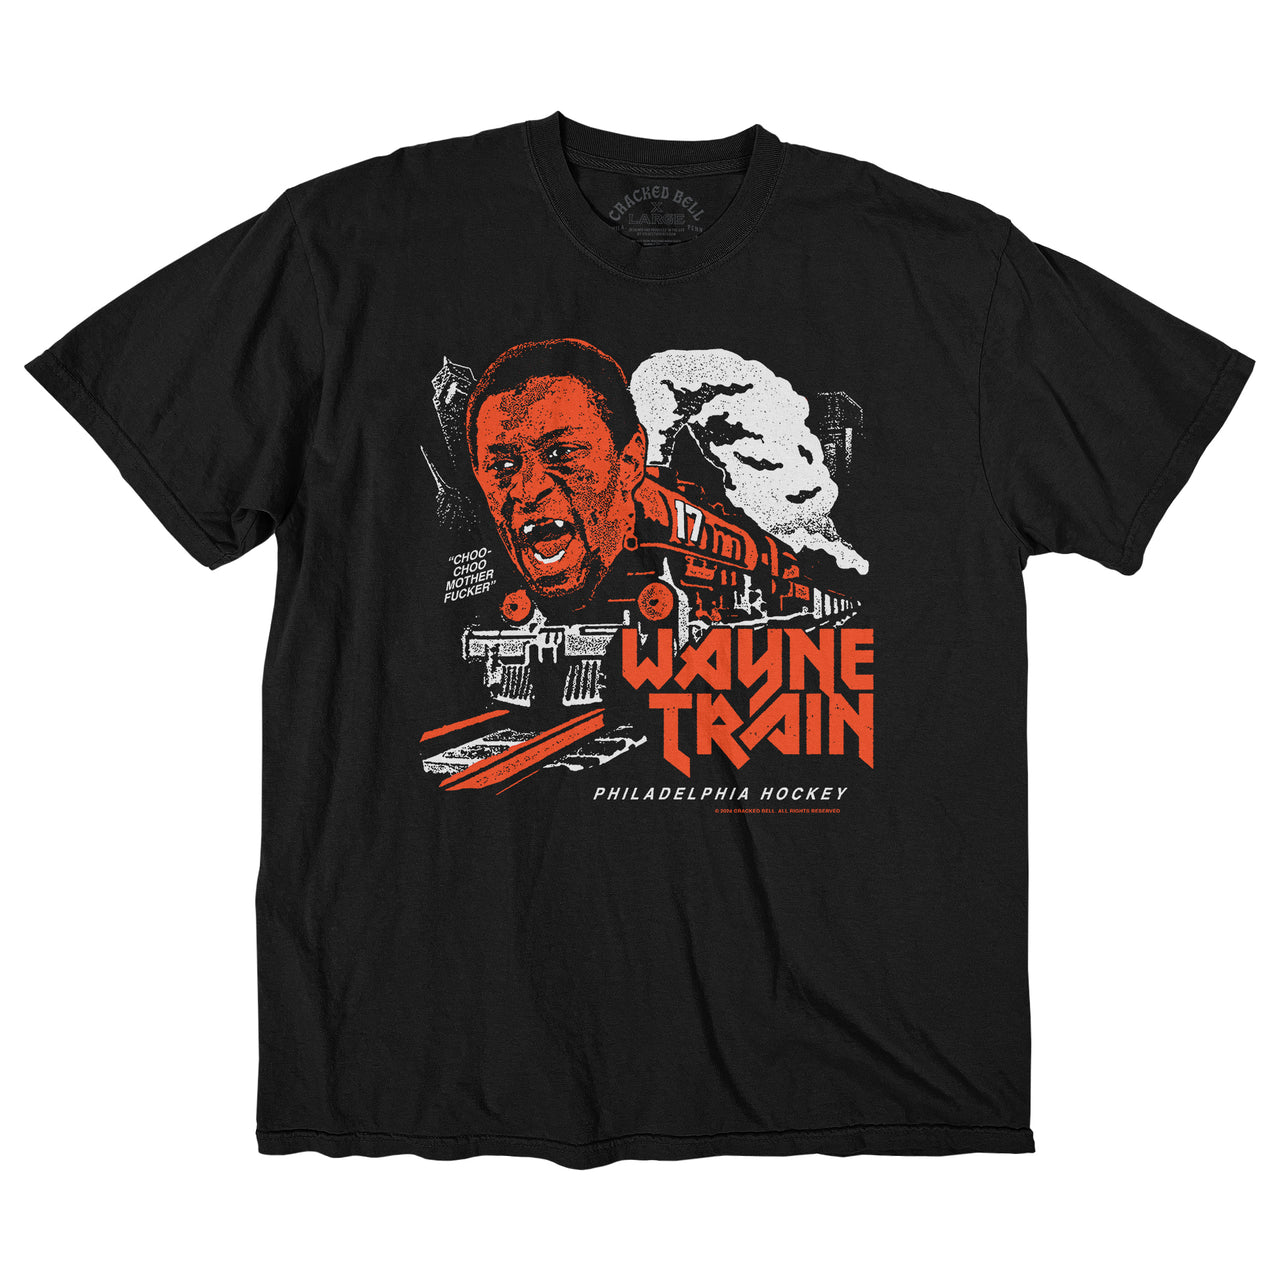 "Wayne Train" Shirt